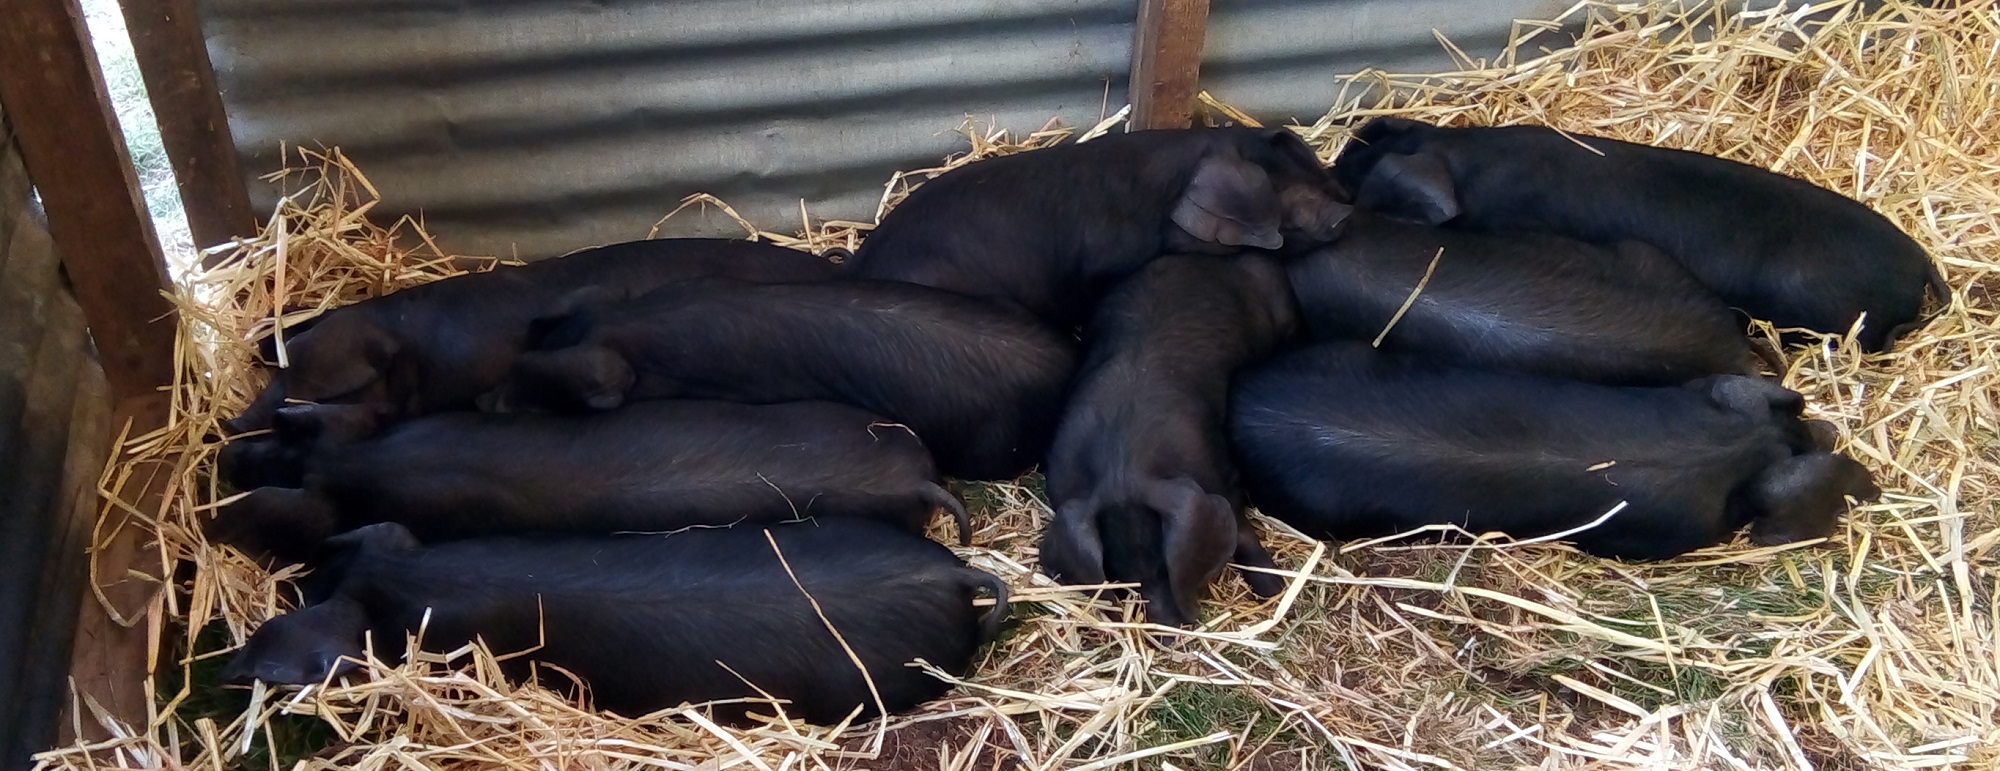 Nine black piglets in straw